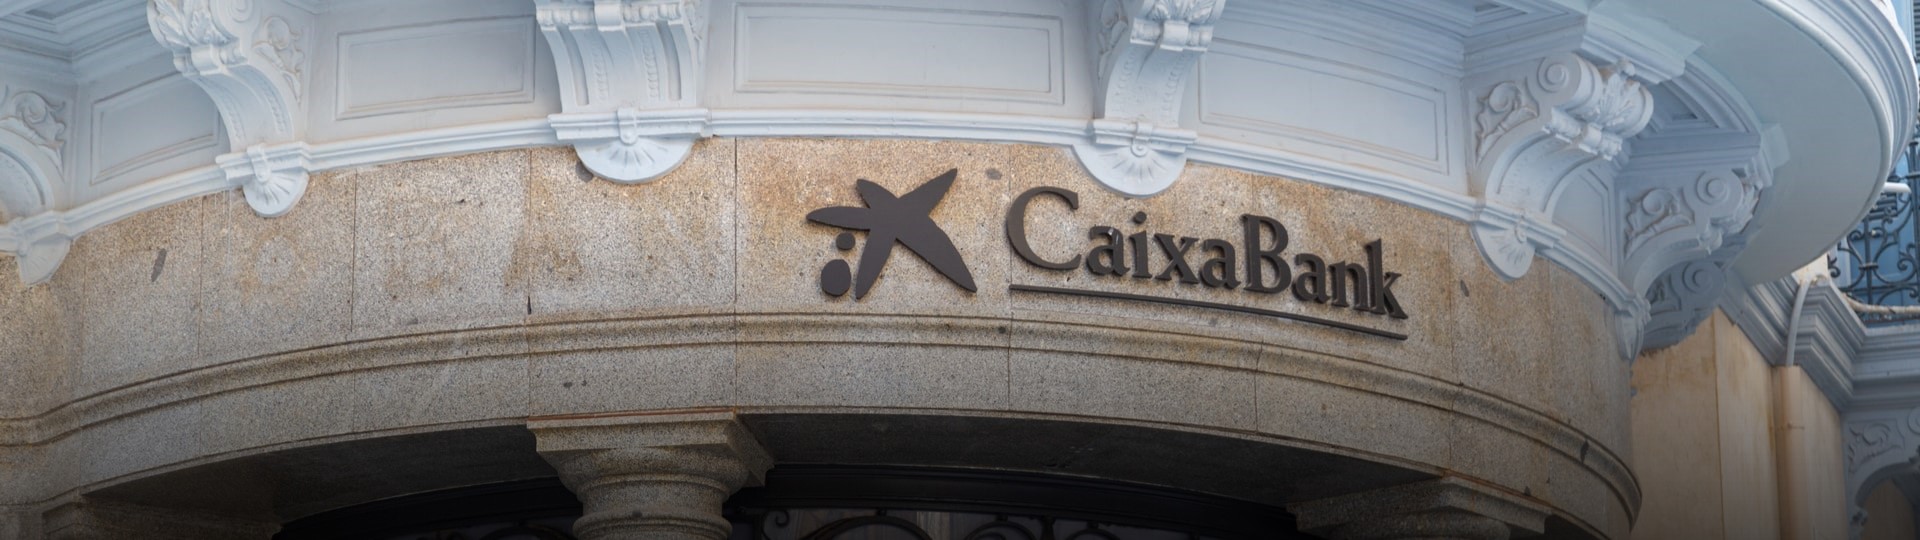 Největší španělská banka Caixabank zruší 8300 míst a zavře přes 1500 poboček